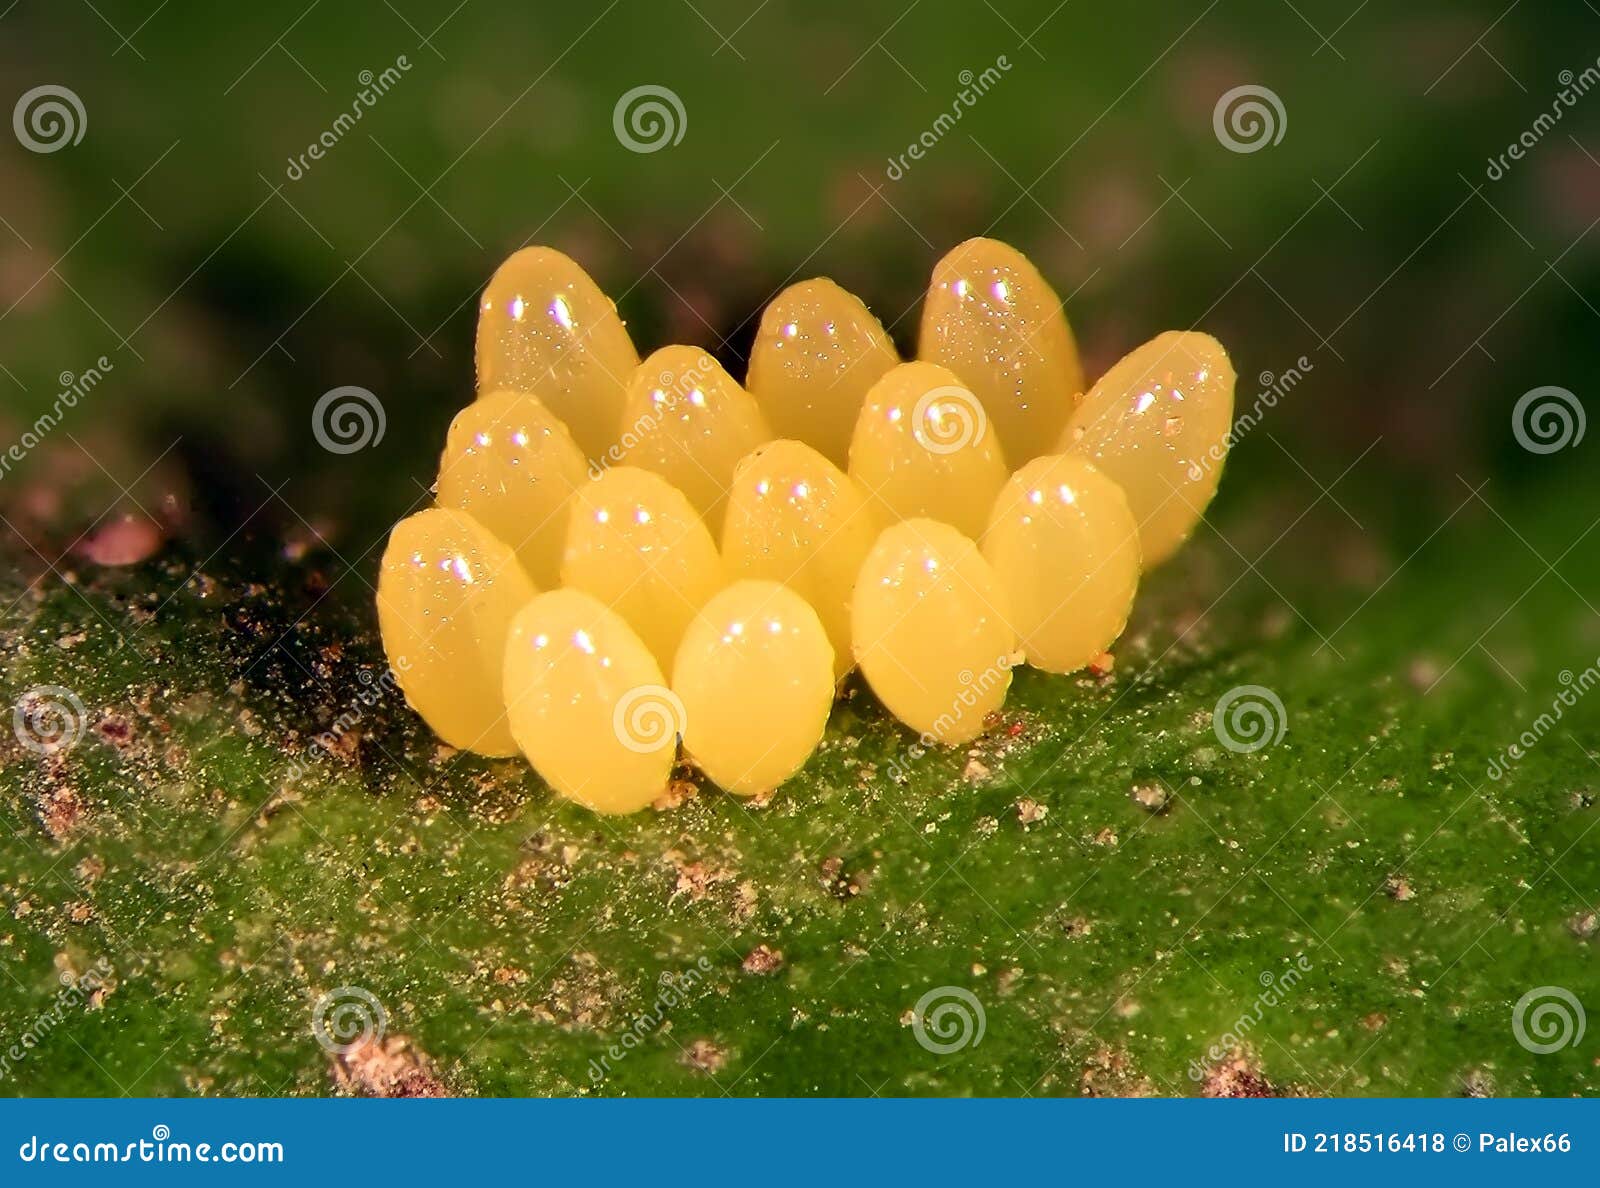 eggs of ladybug, harmonia axyridis on green leaf